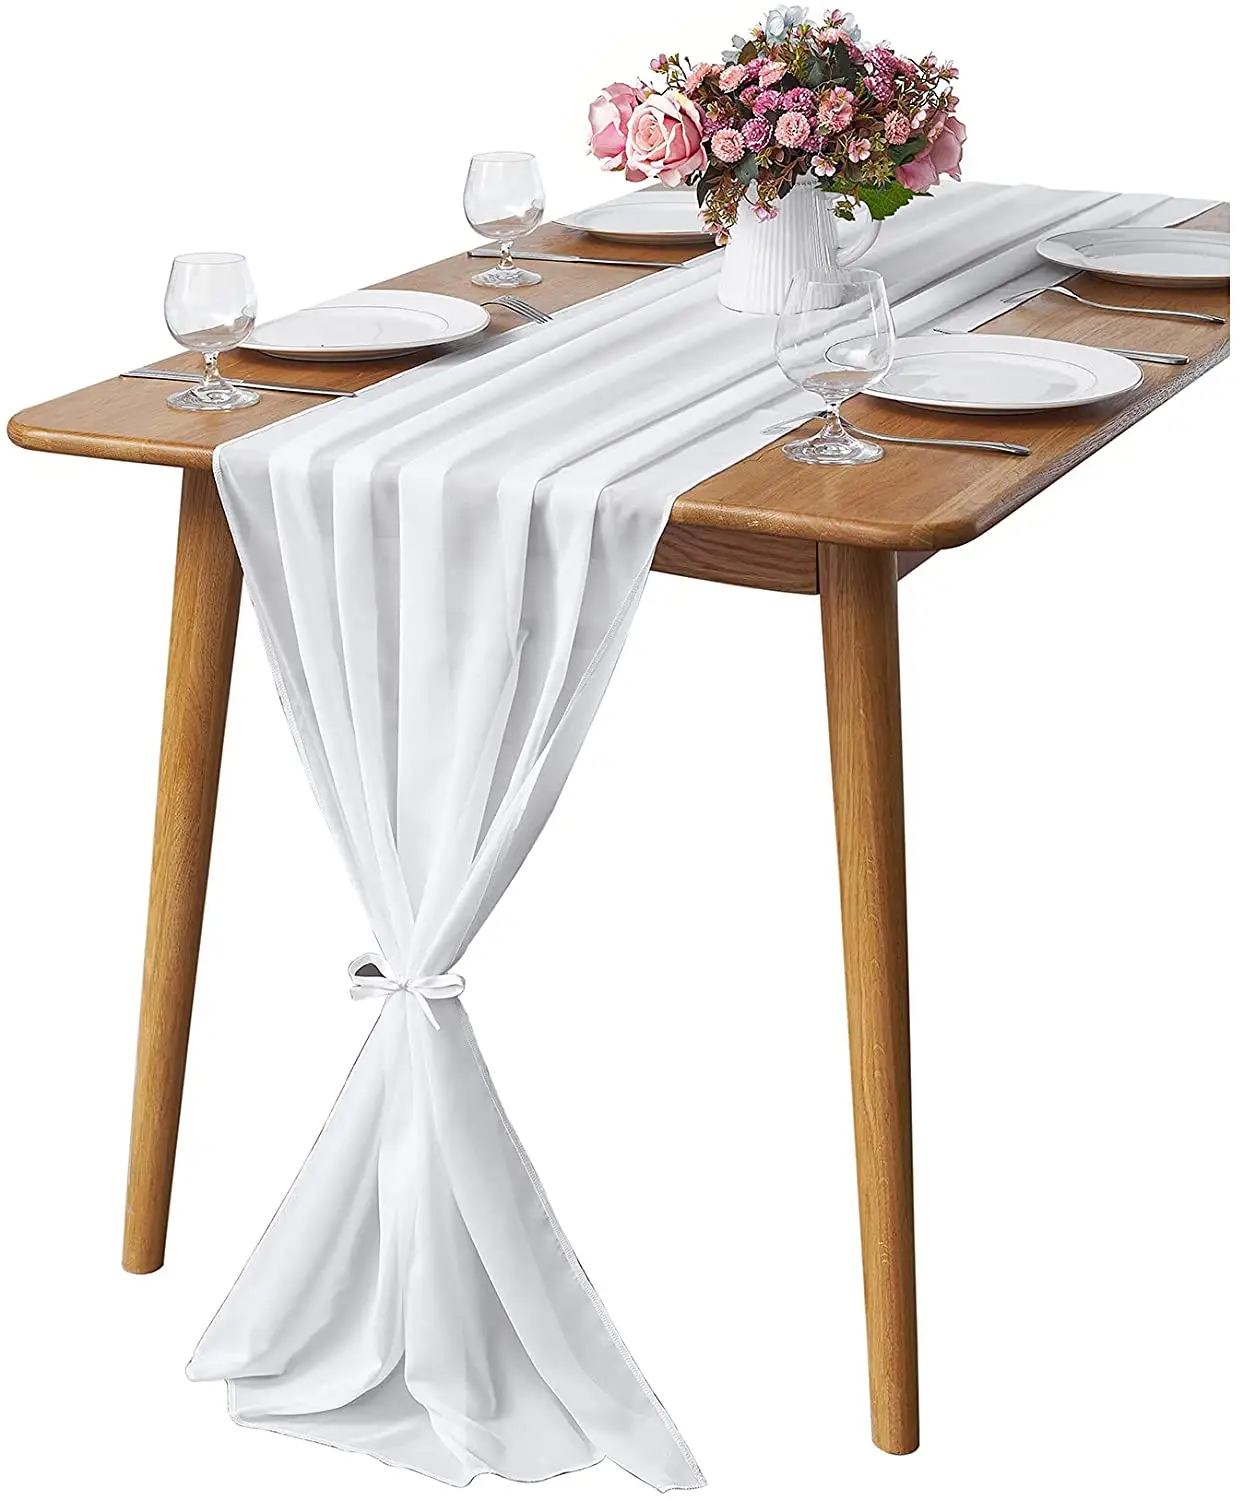 Runner da tavolo trasparente bianco 29x120 pollici Runner da tavolo per ricevimento di nozze decorazione rustica per feste nuziali di nozze Boho